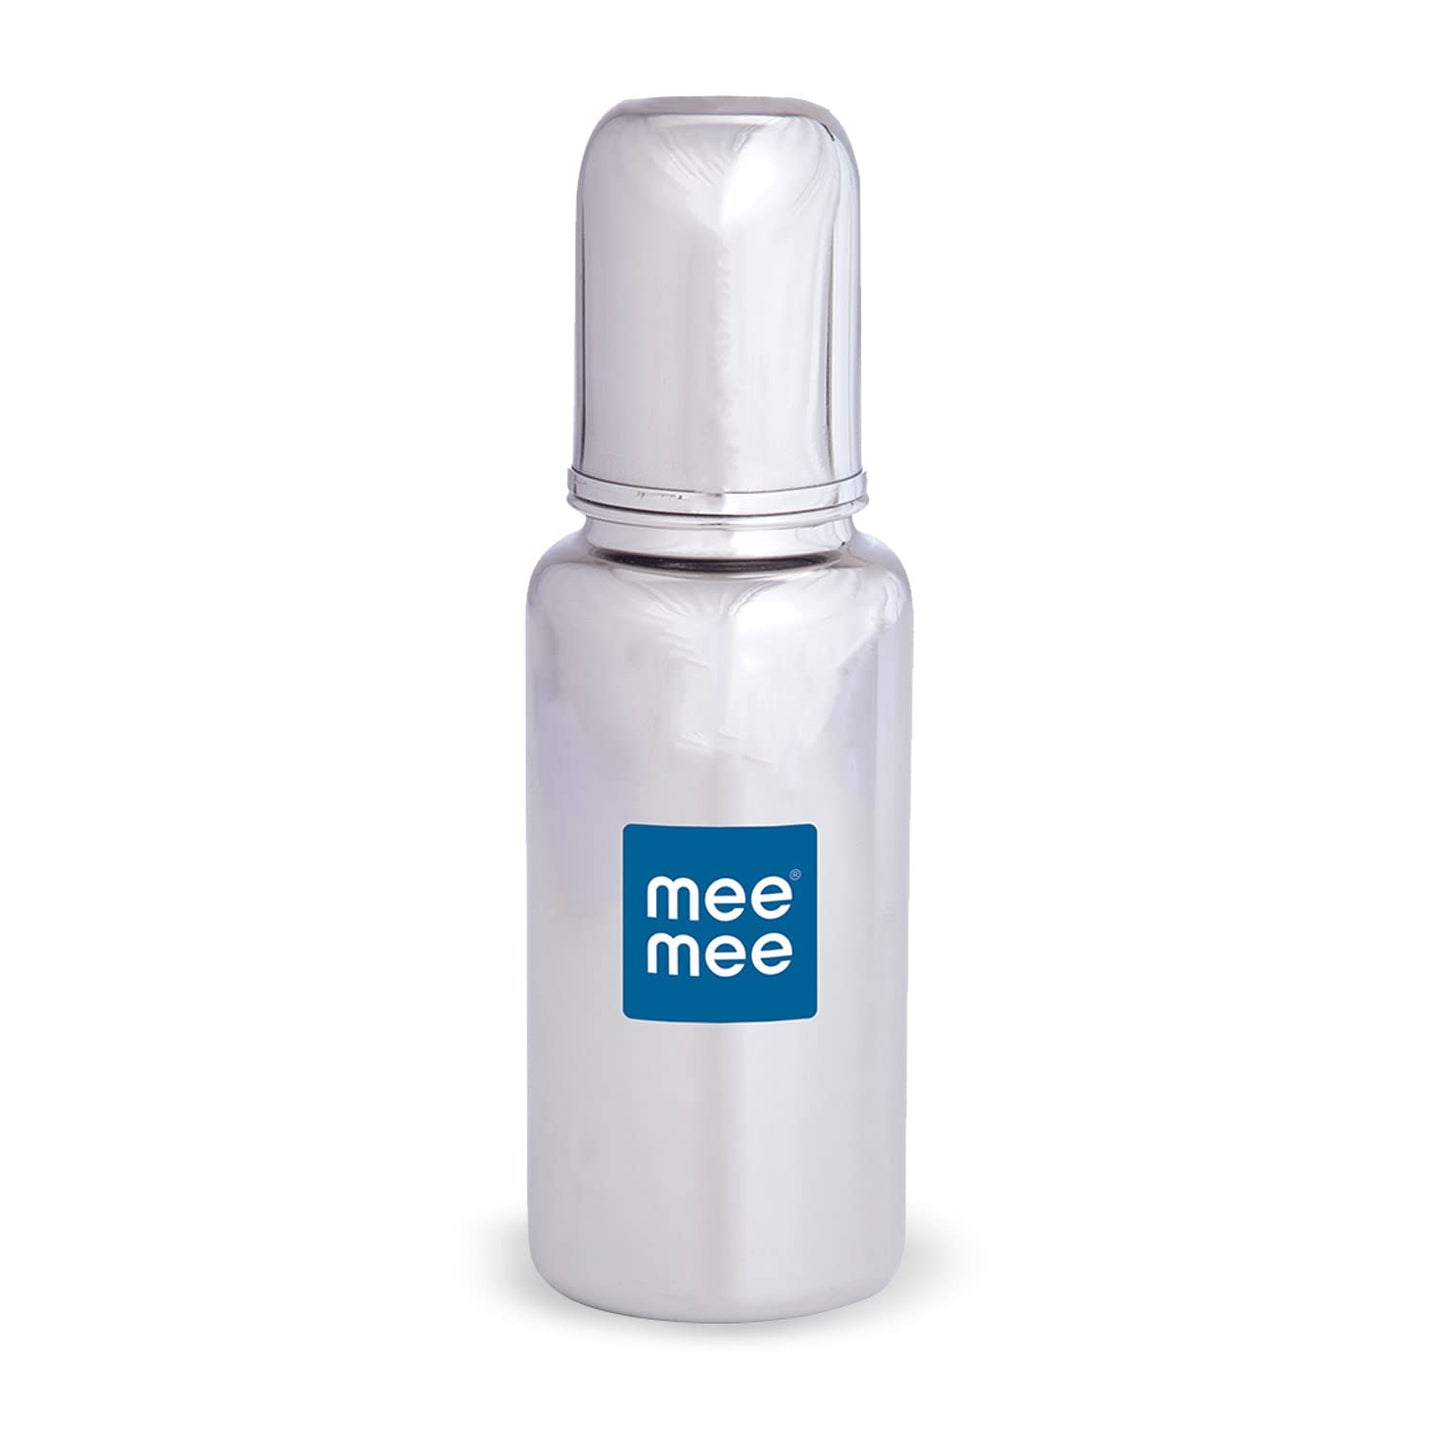 Mee Mee Premium Steel Feeding Bottle, Silver - 240 ml